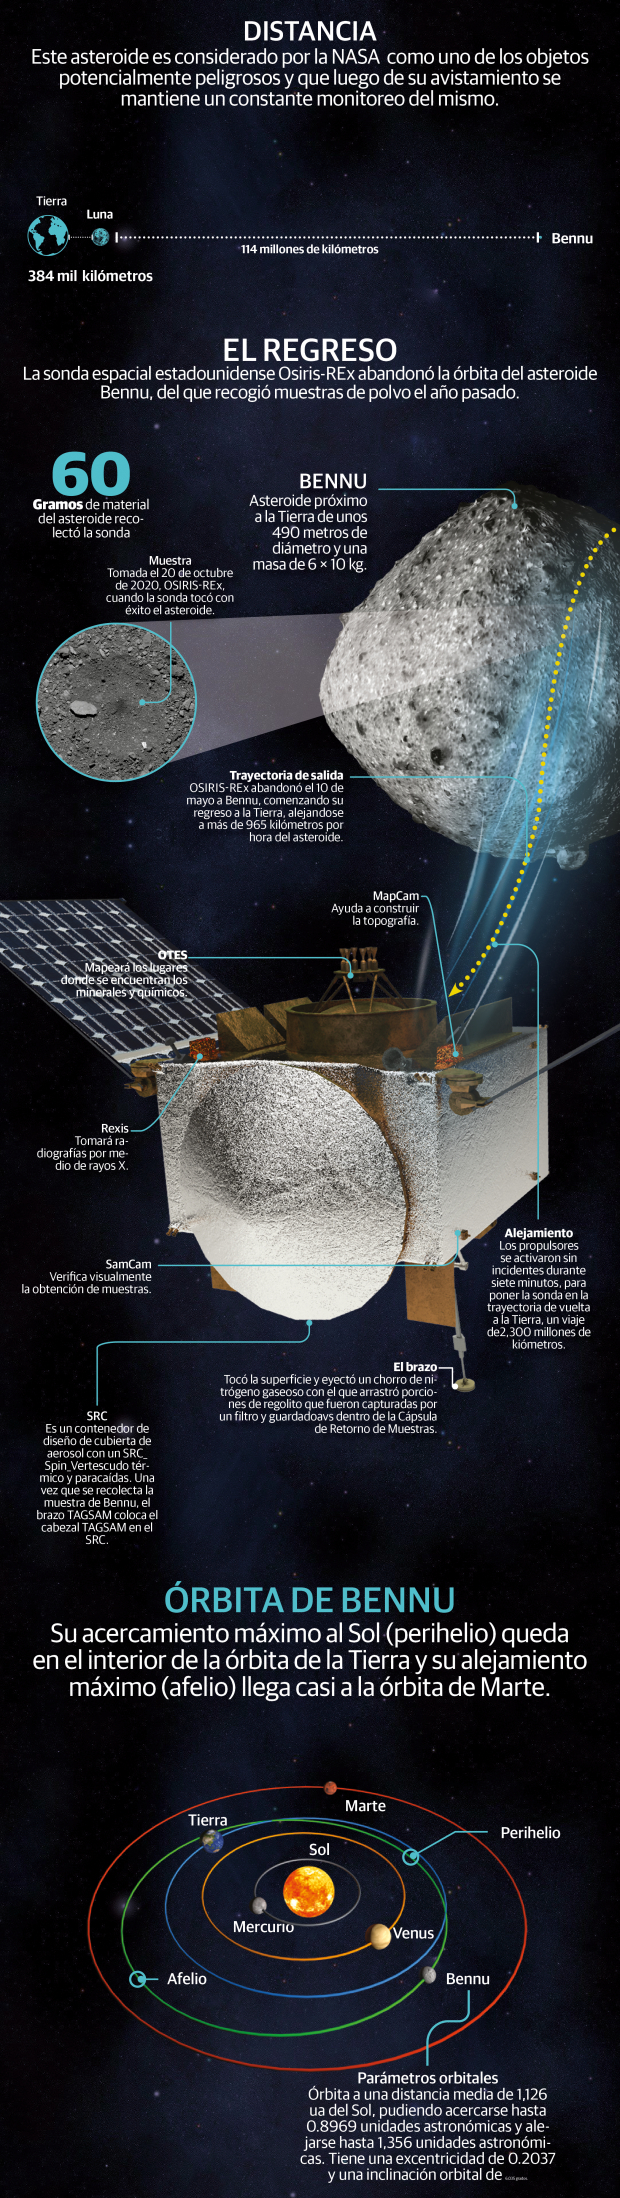 La sonda OSIRIS-REx emprende regreso a la Tierra con muestras